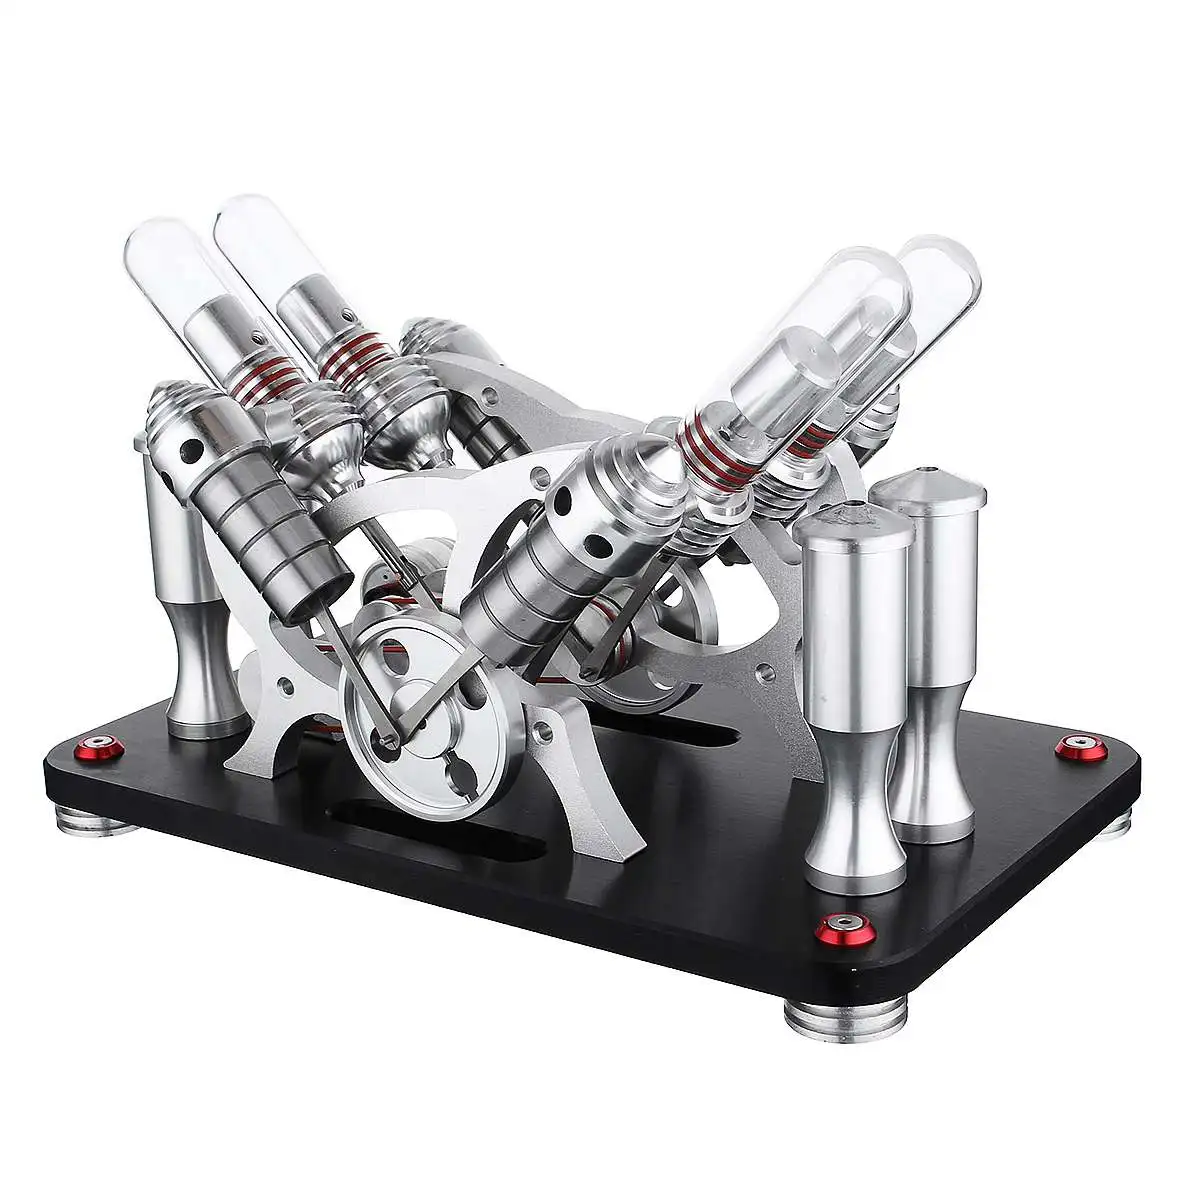 SaiDi вынос руля модель с паровым двигателем 8,6 дюймов парогенератор котел с 4 спиртовыми лампами научная игрушка подарок